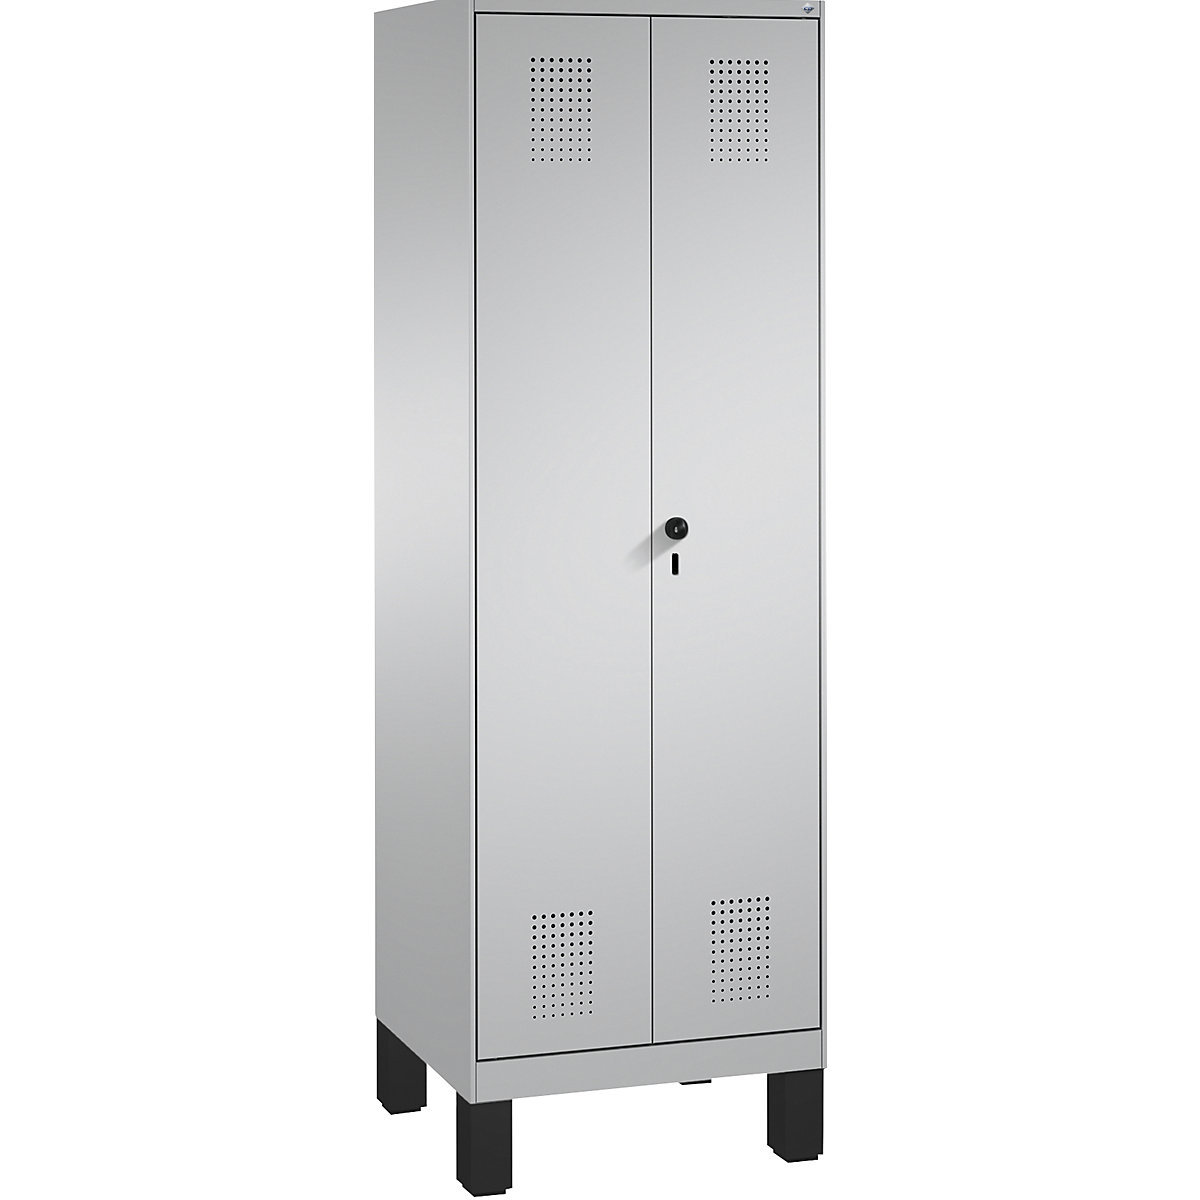 EVOLO tárolószekrény, egymásra csukódó ajtók, lábakkal – C+P, 1 fülke, szélesség 600 mm, 4 polccal, fehéralumínium / fehéralumínium-8